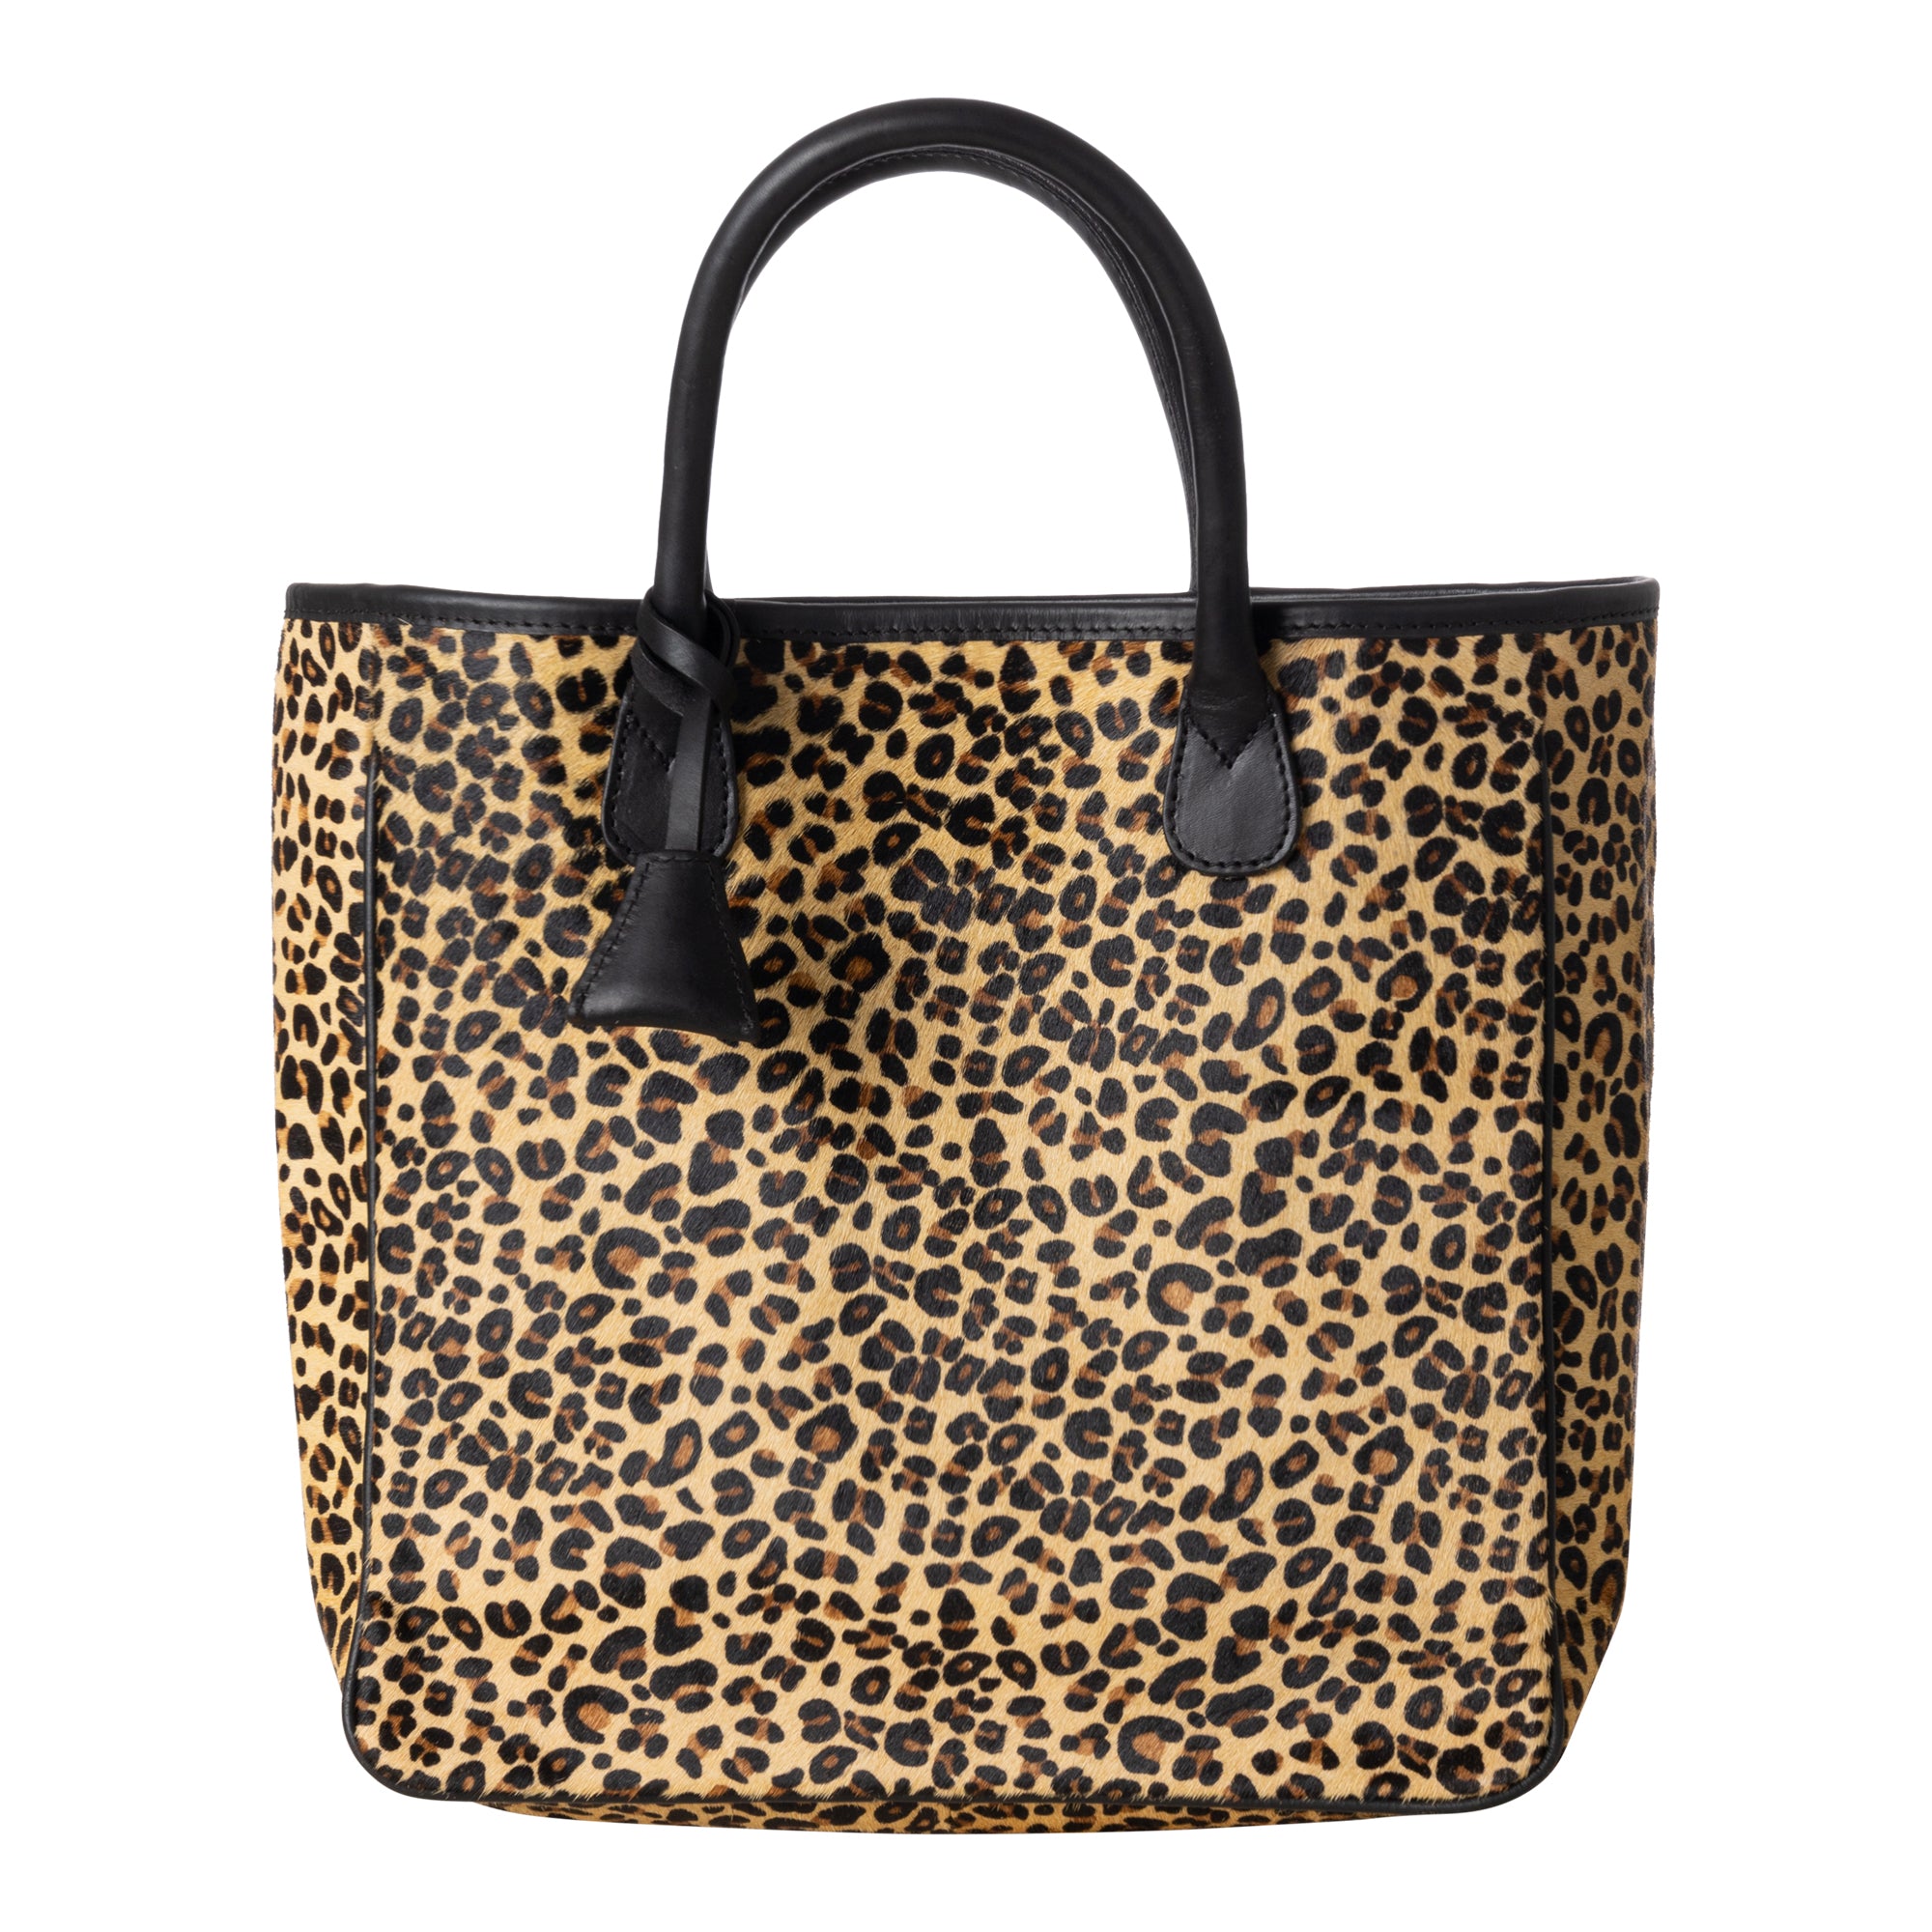 Black Canvas Bag Leopard, Bag Women Leopard